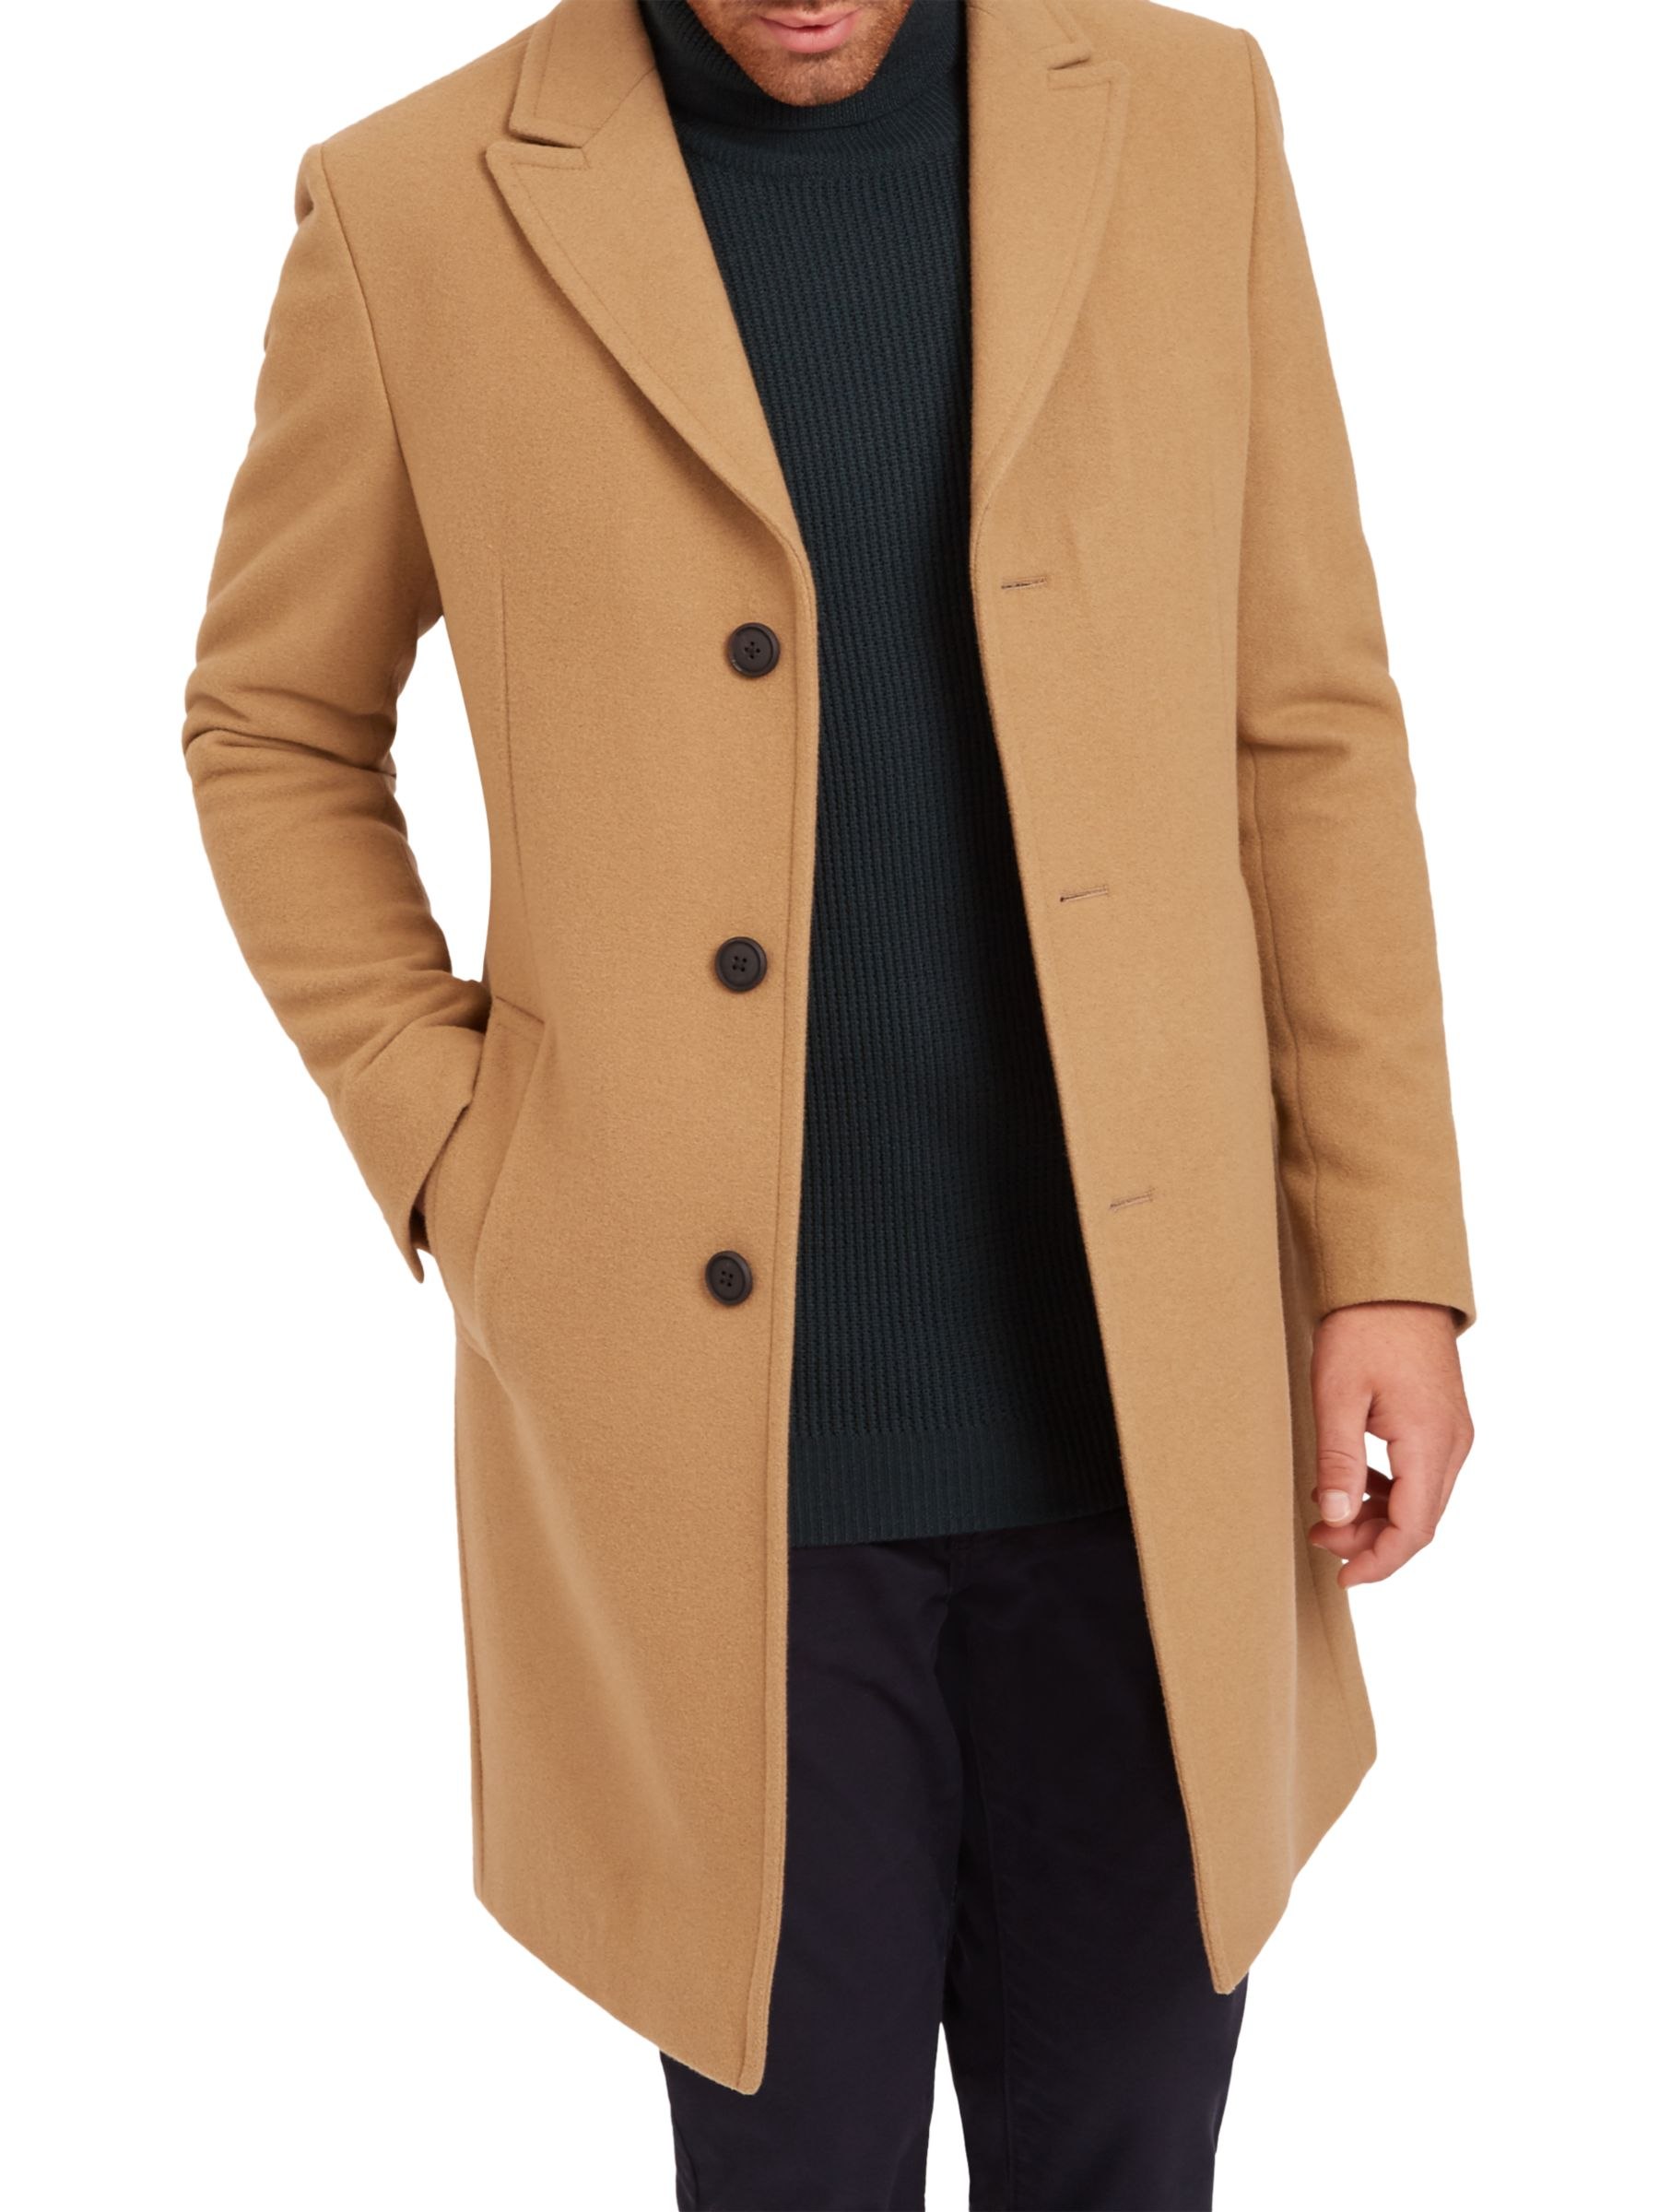 Лучшие мужские пальто. Боттега пальто мужское кашемировое пальто. Пальто кэмэл мужское длинное. Пальто Честерфилд мужское.